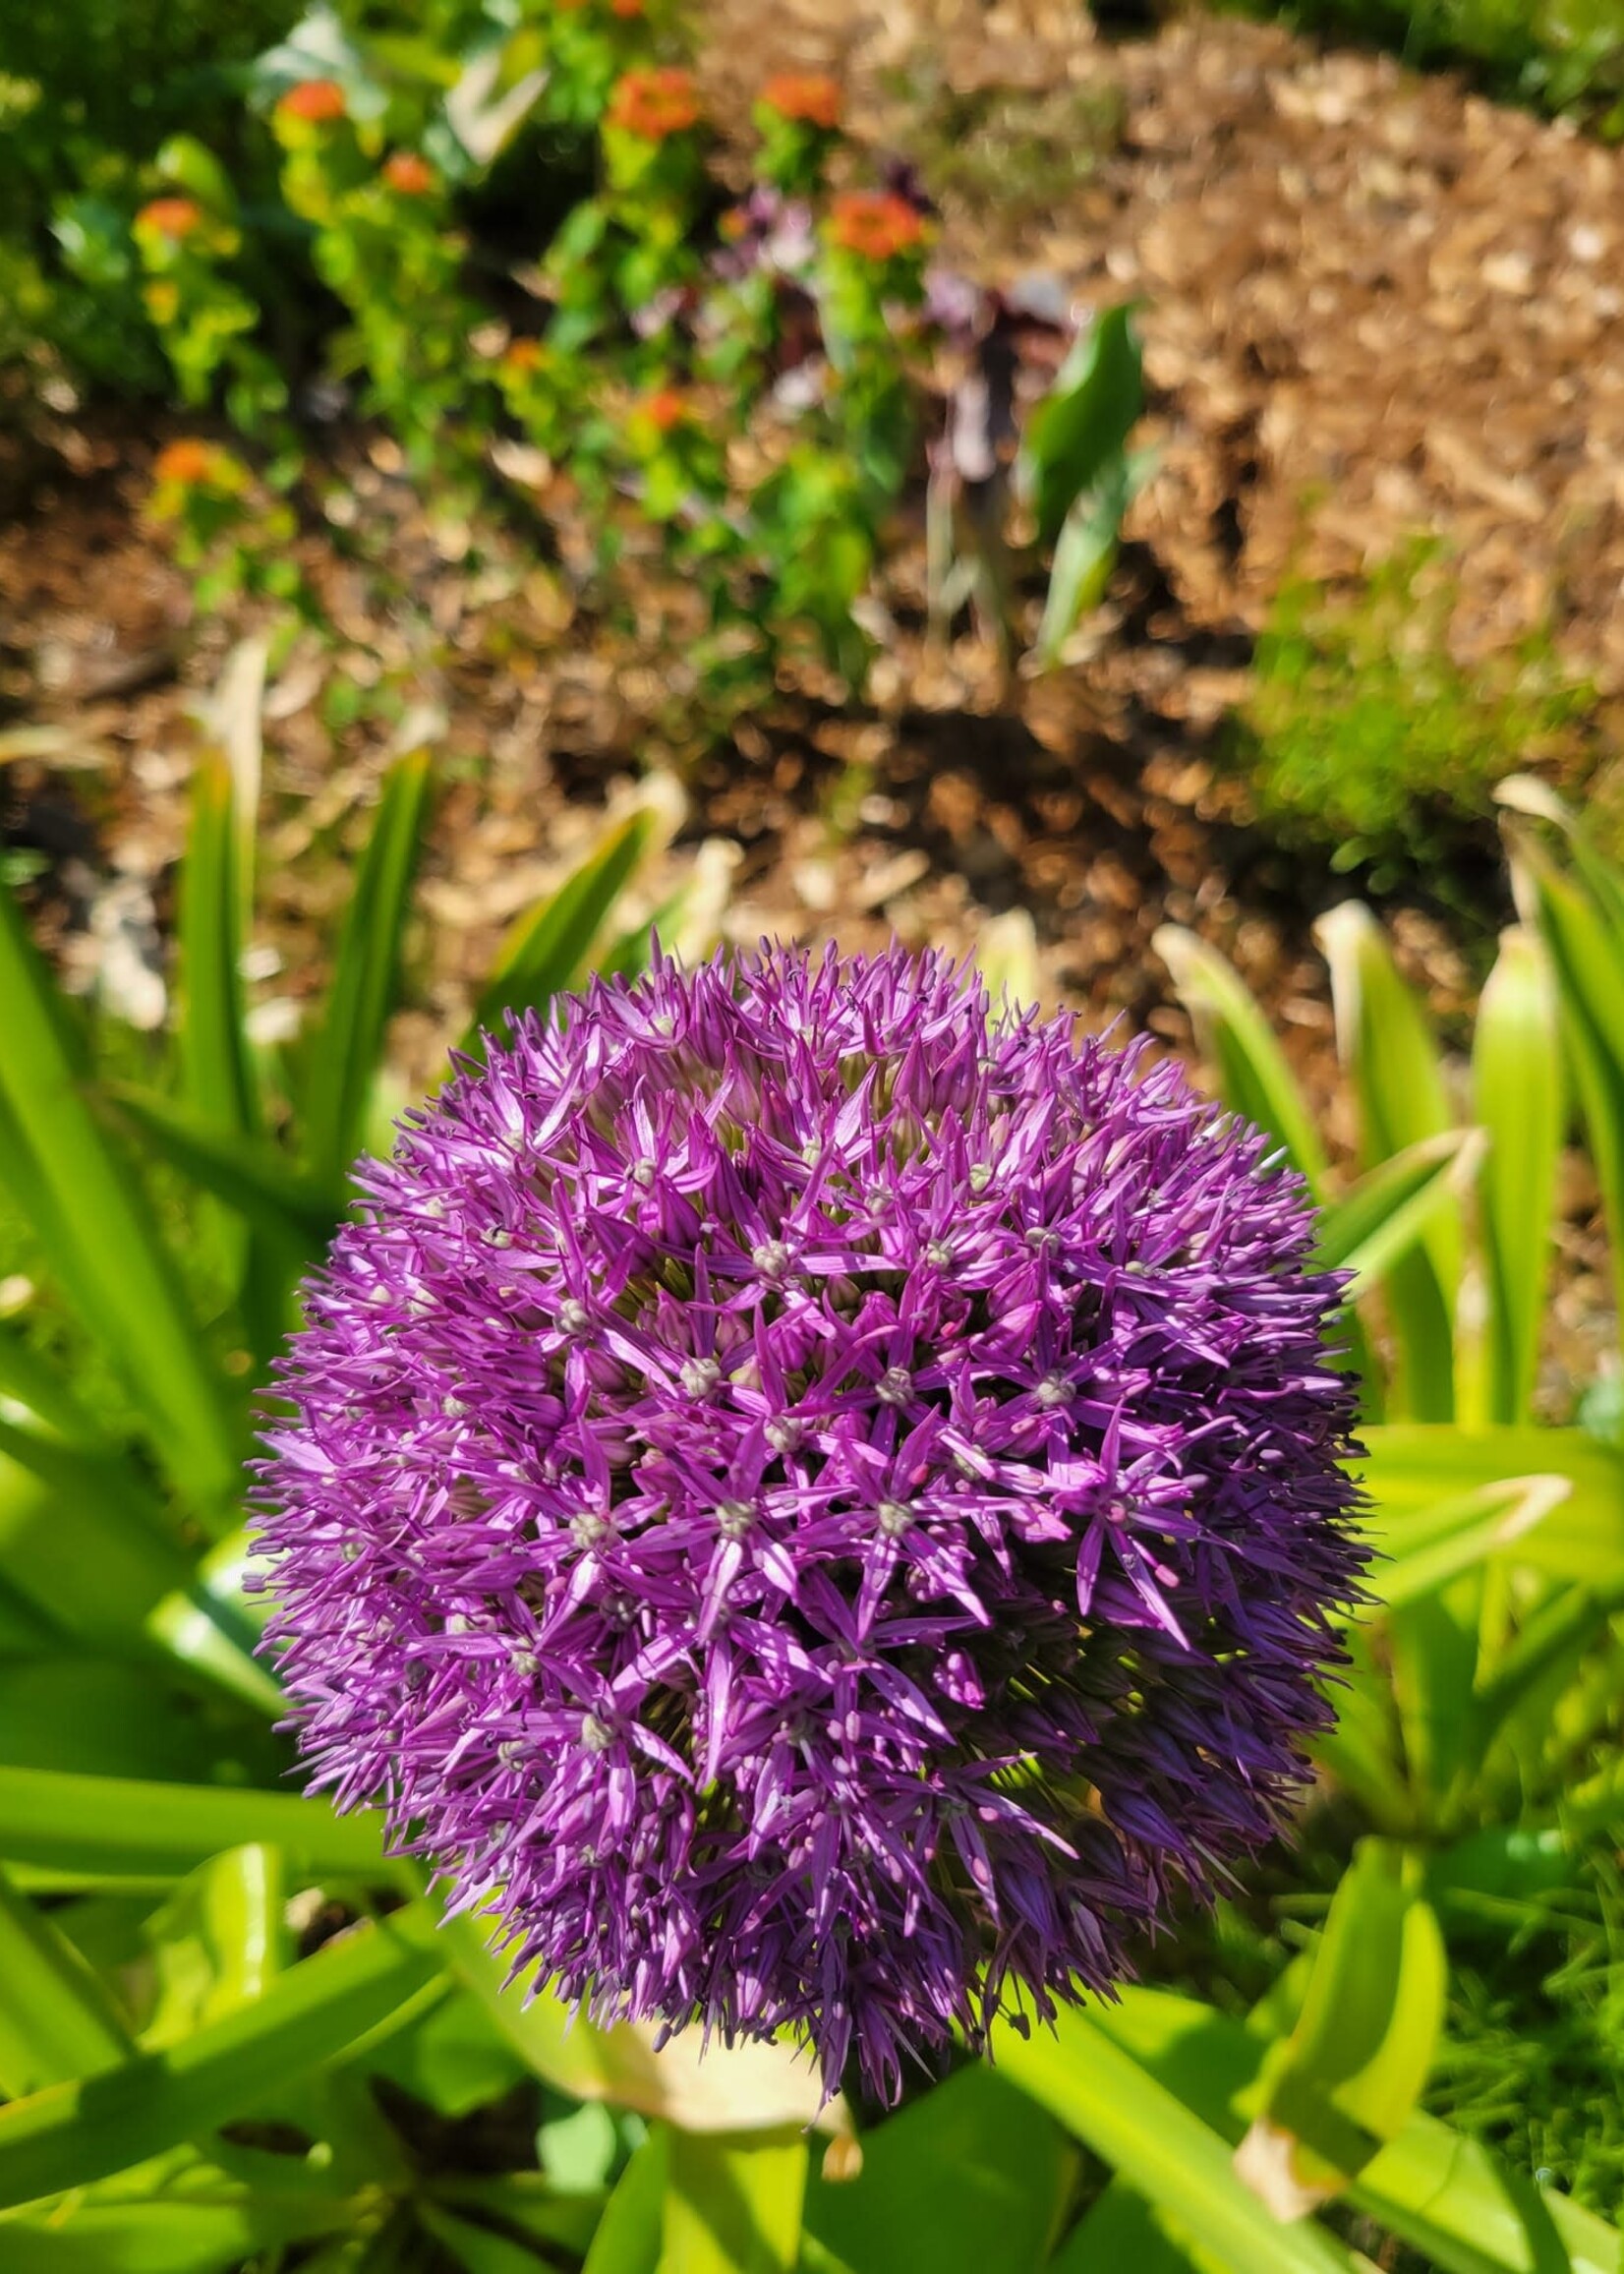 Florissa Ambassador Allium 20 cm+ 1/pkg